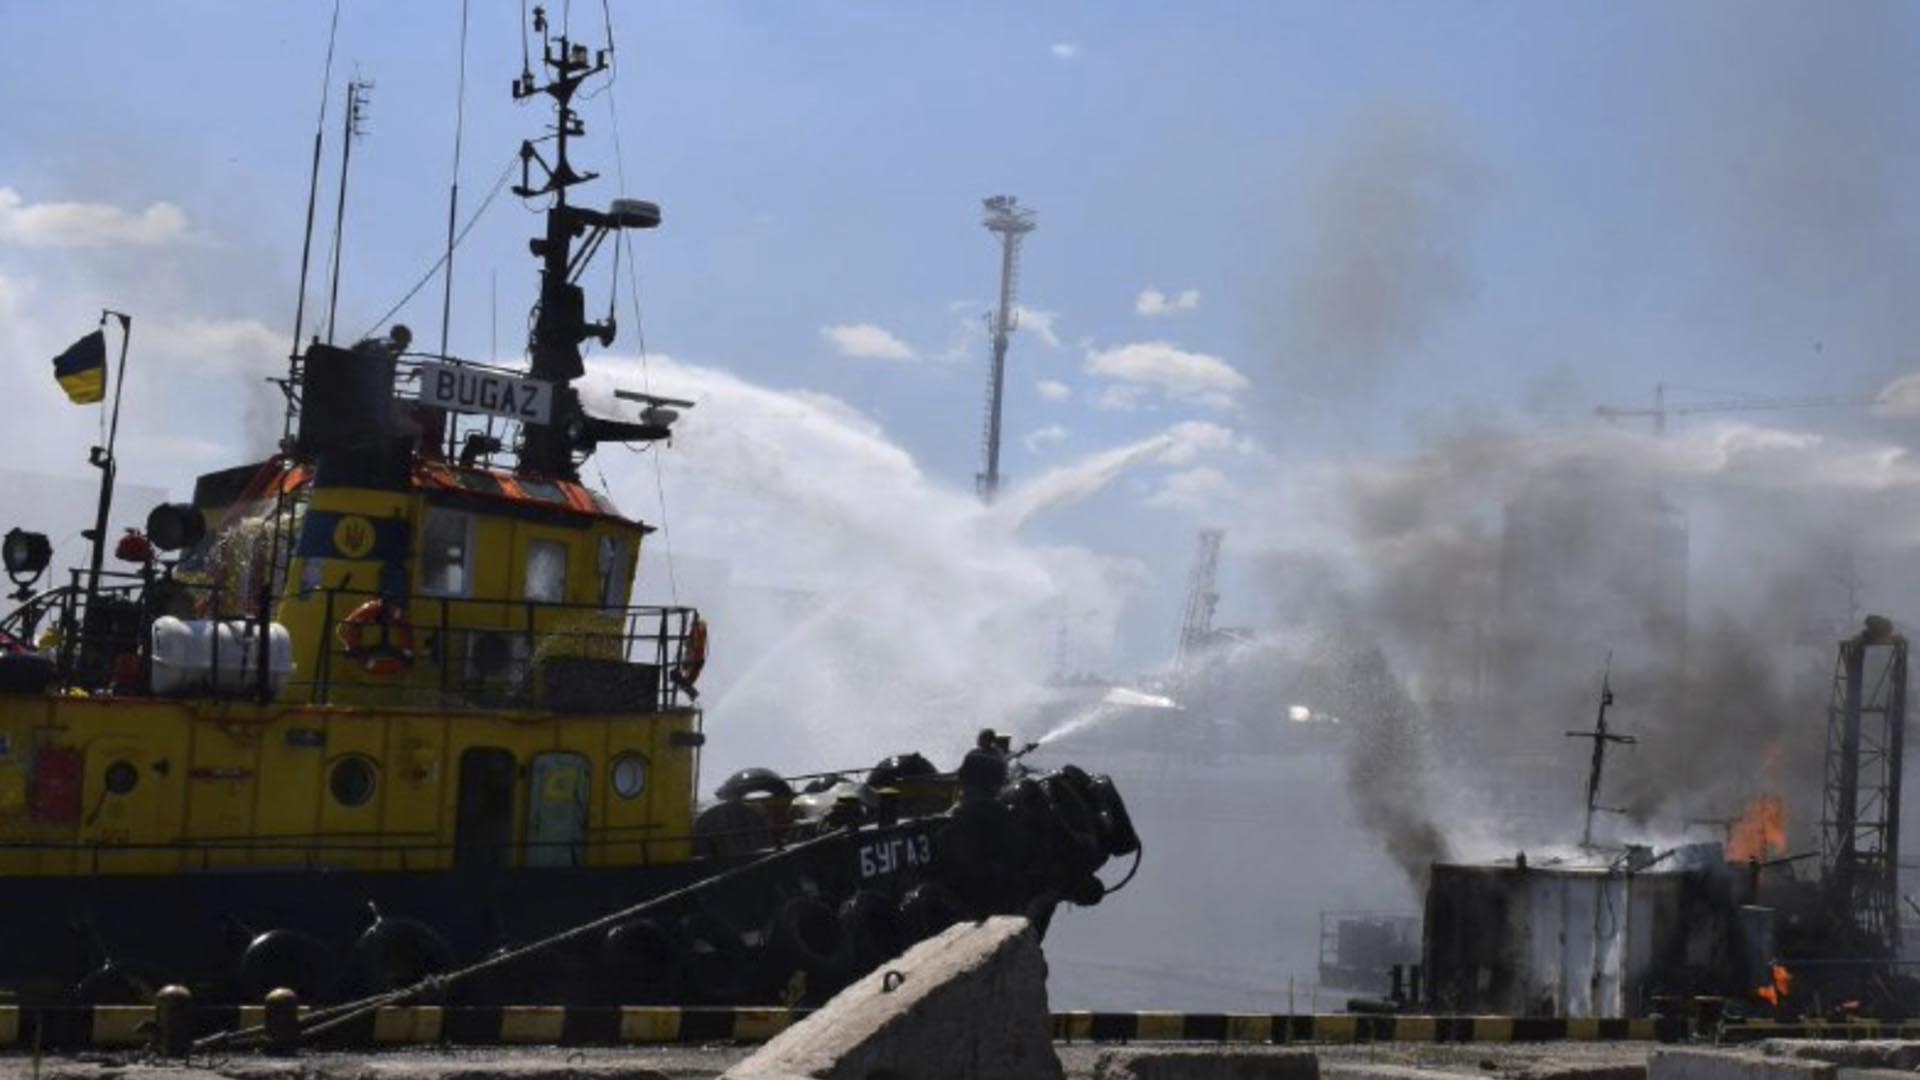 ARCHIVO - En esta foto proporcionada por la Oficina de Prensa del Ayuntamiento de Odesa, los bomberos apagaron un incendio en el puerto después de un ataque con misiles rusos en Odesa, Ucrania, el 5 de junio de 2022. (Oficina de Prensa del Ayuntamiento de Odesa vía AP, Archivo)

